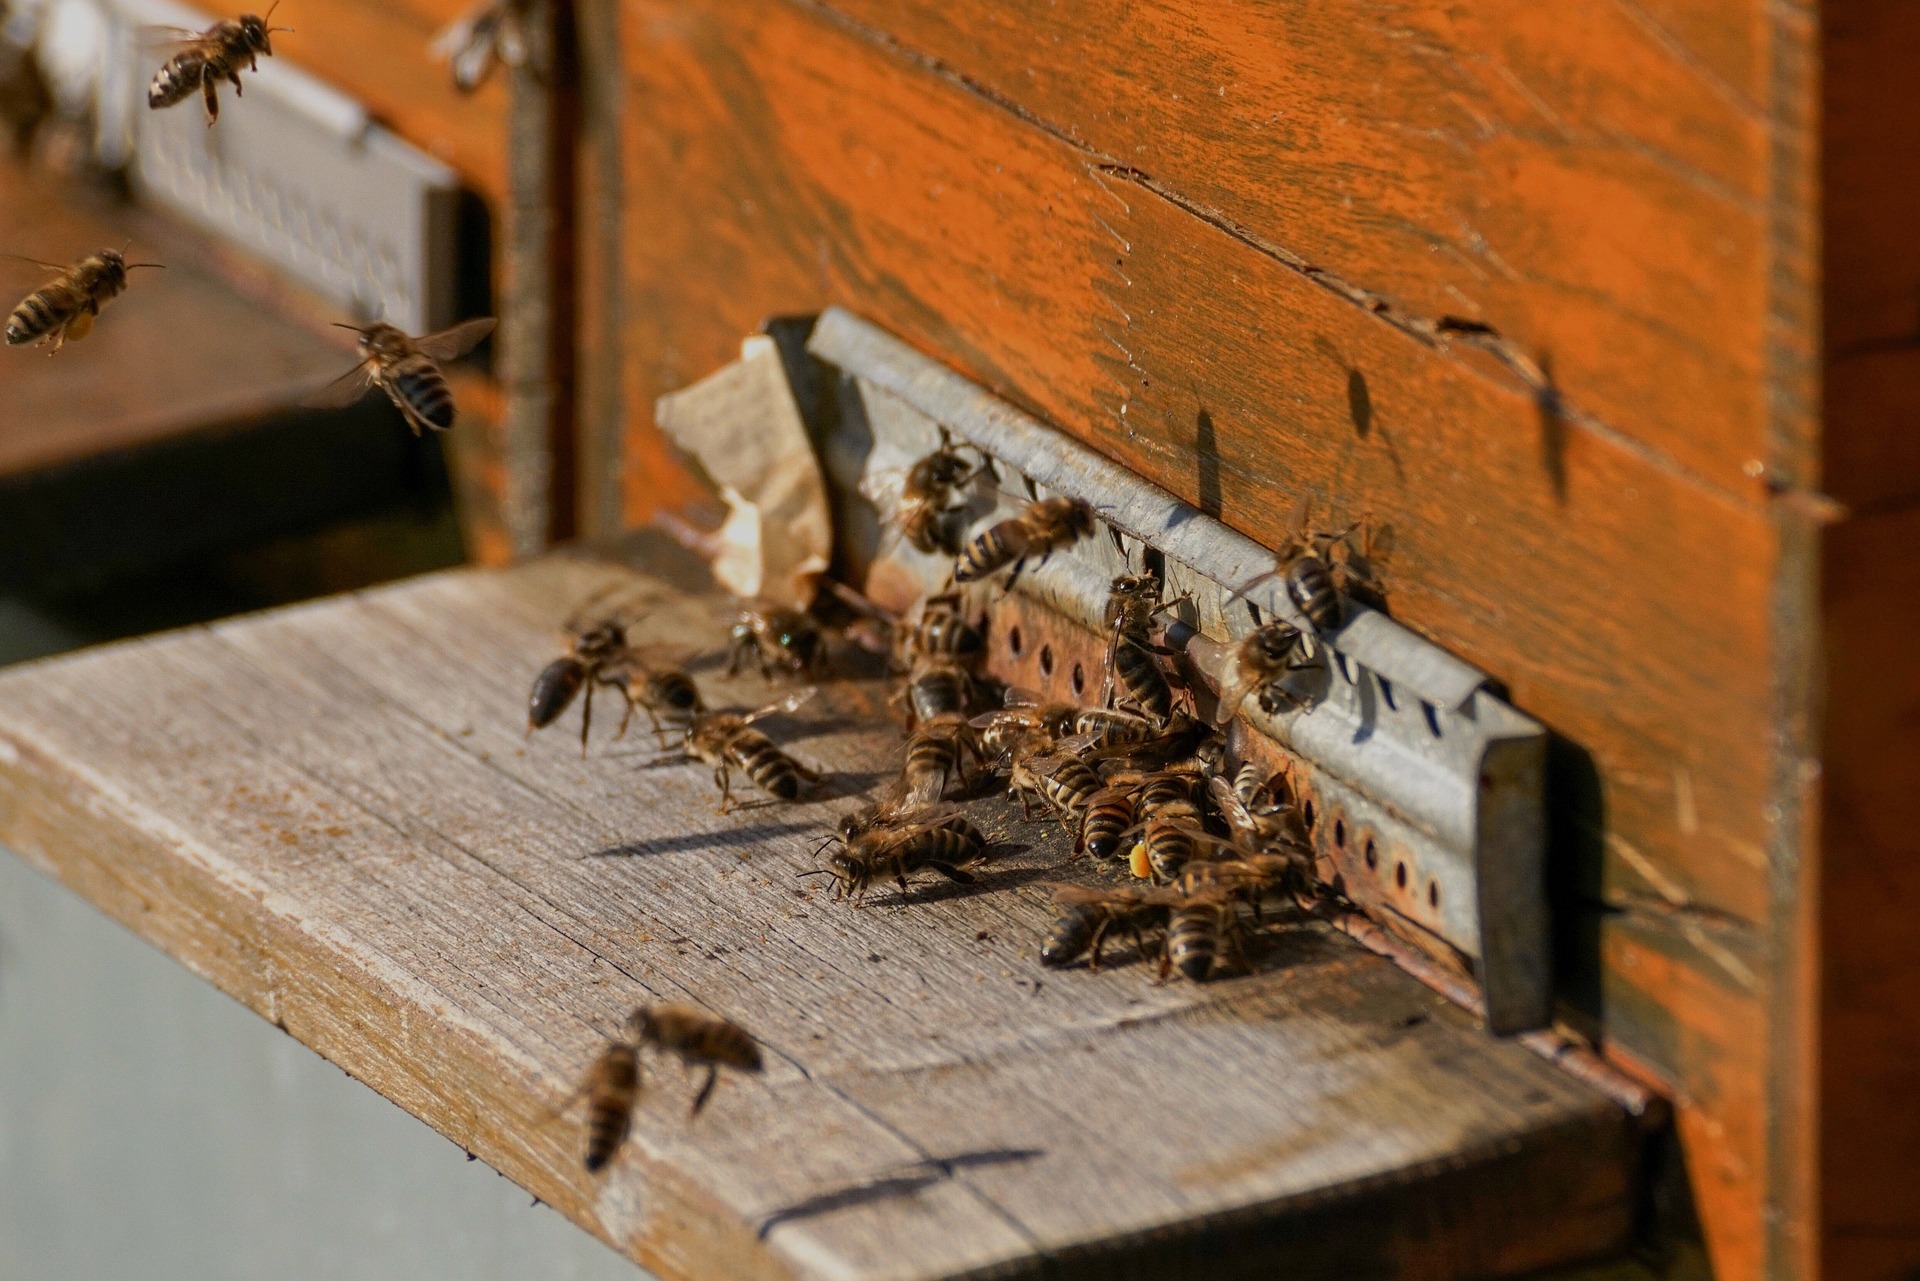 Más de 563.000 euros en ayudas agroambientales a la apicultura extremeña